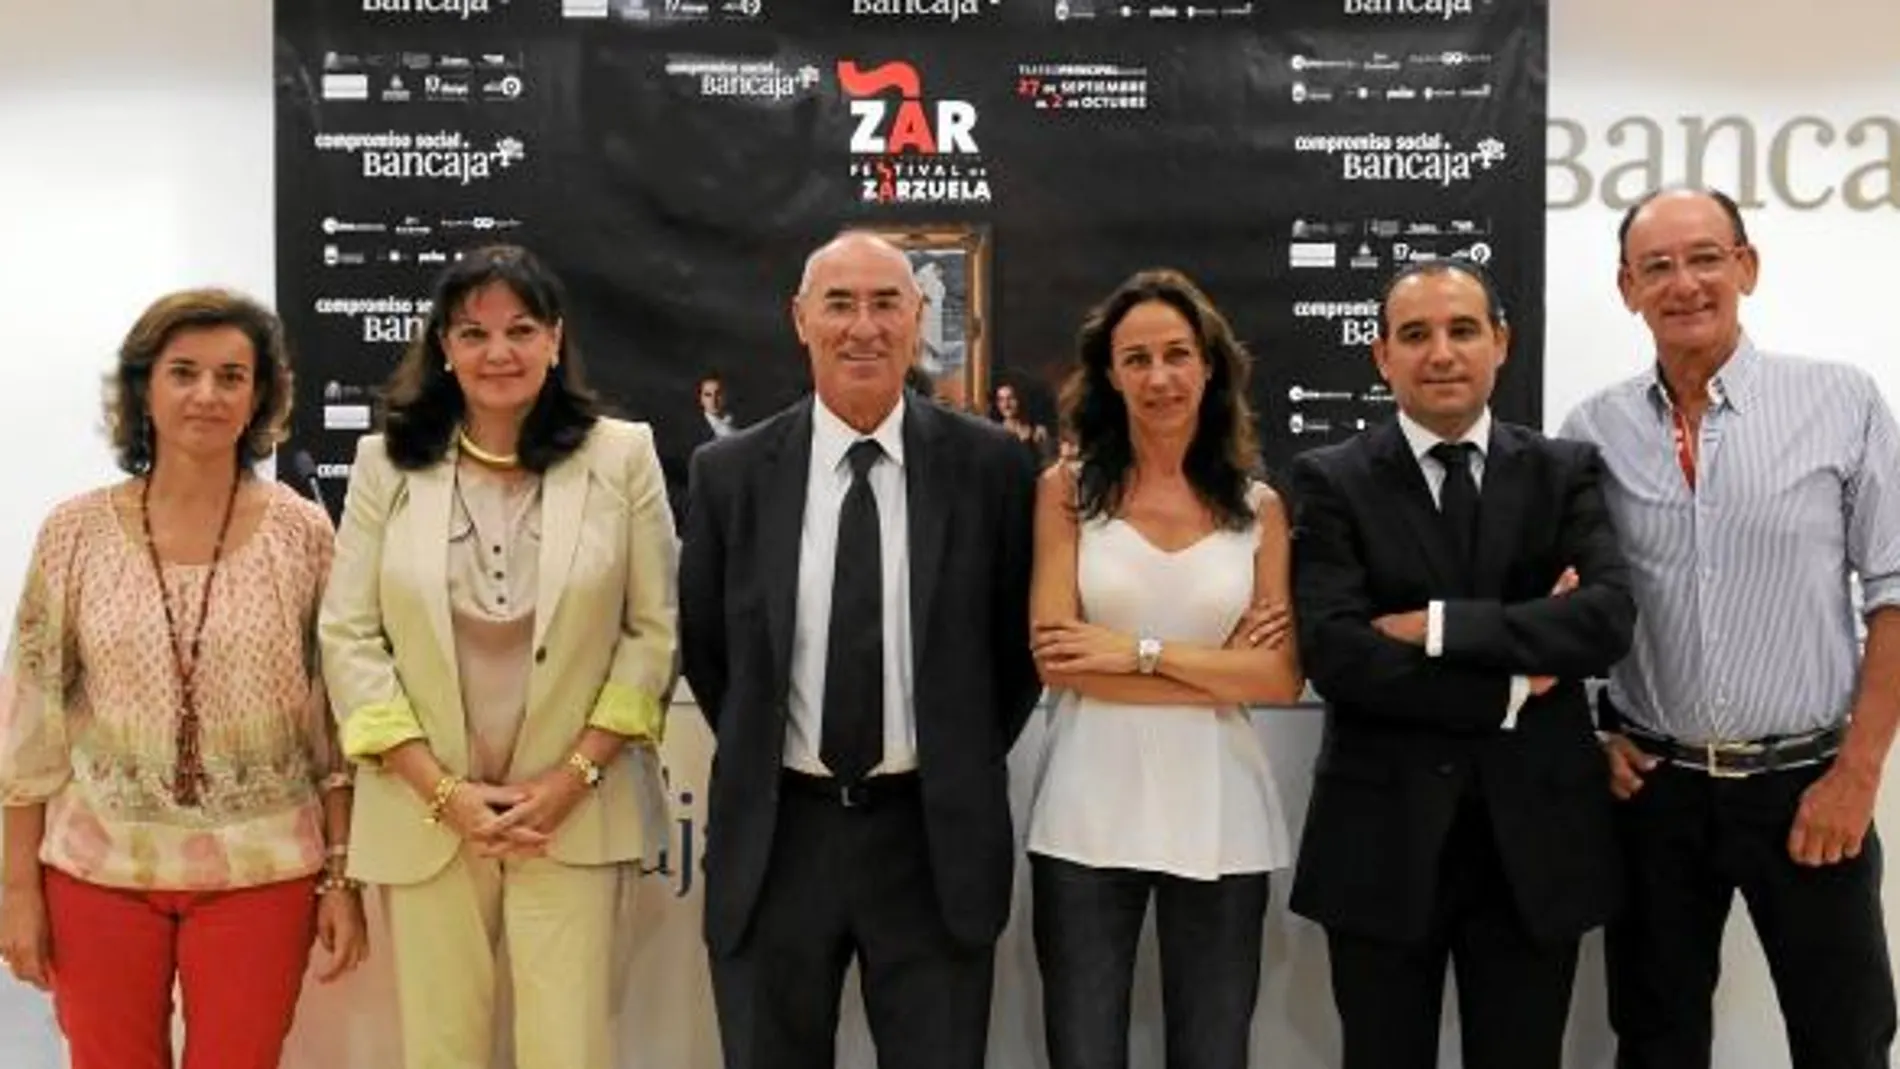 Representantes de la Fundación dasyc, de la Fundación Bancaja y de la Generalitat, tras firmar el acuerdo